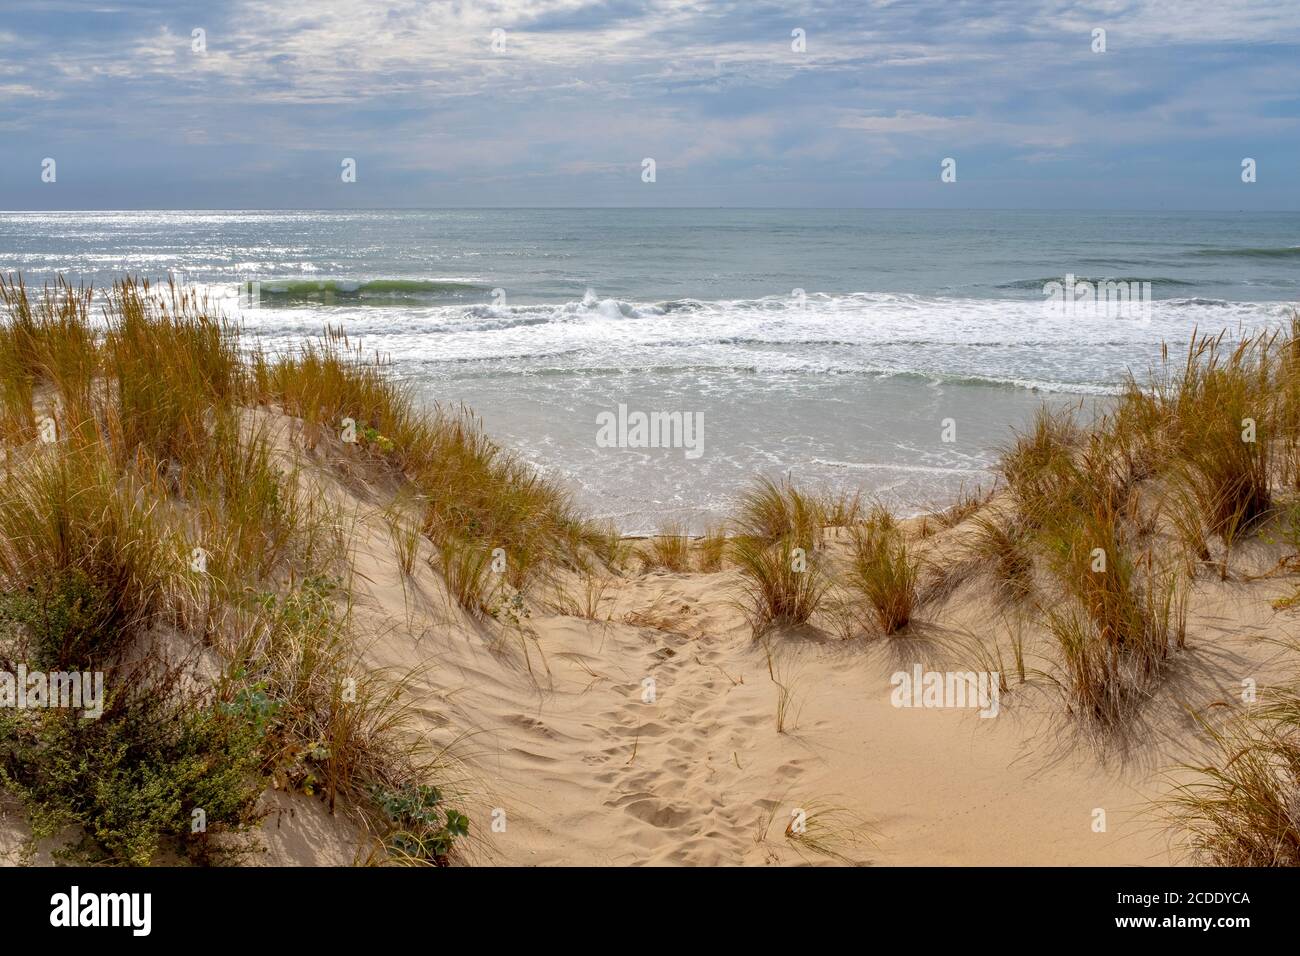 Vagues de l'océan se brisant sur une plage de l'Atlantique vide sur la côte française. Prise d'un petit chemin en été à la fin de l'après-midi Banque D'Images